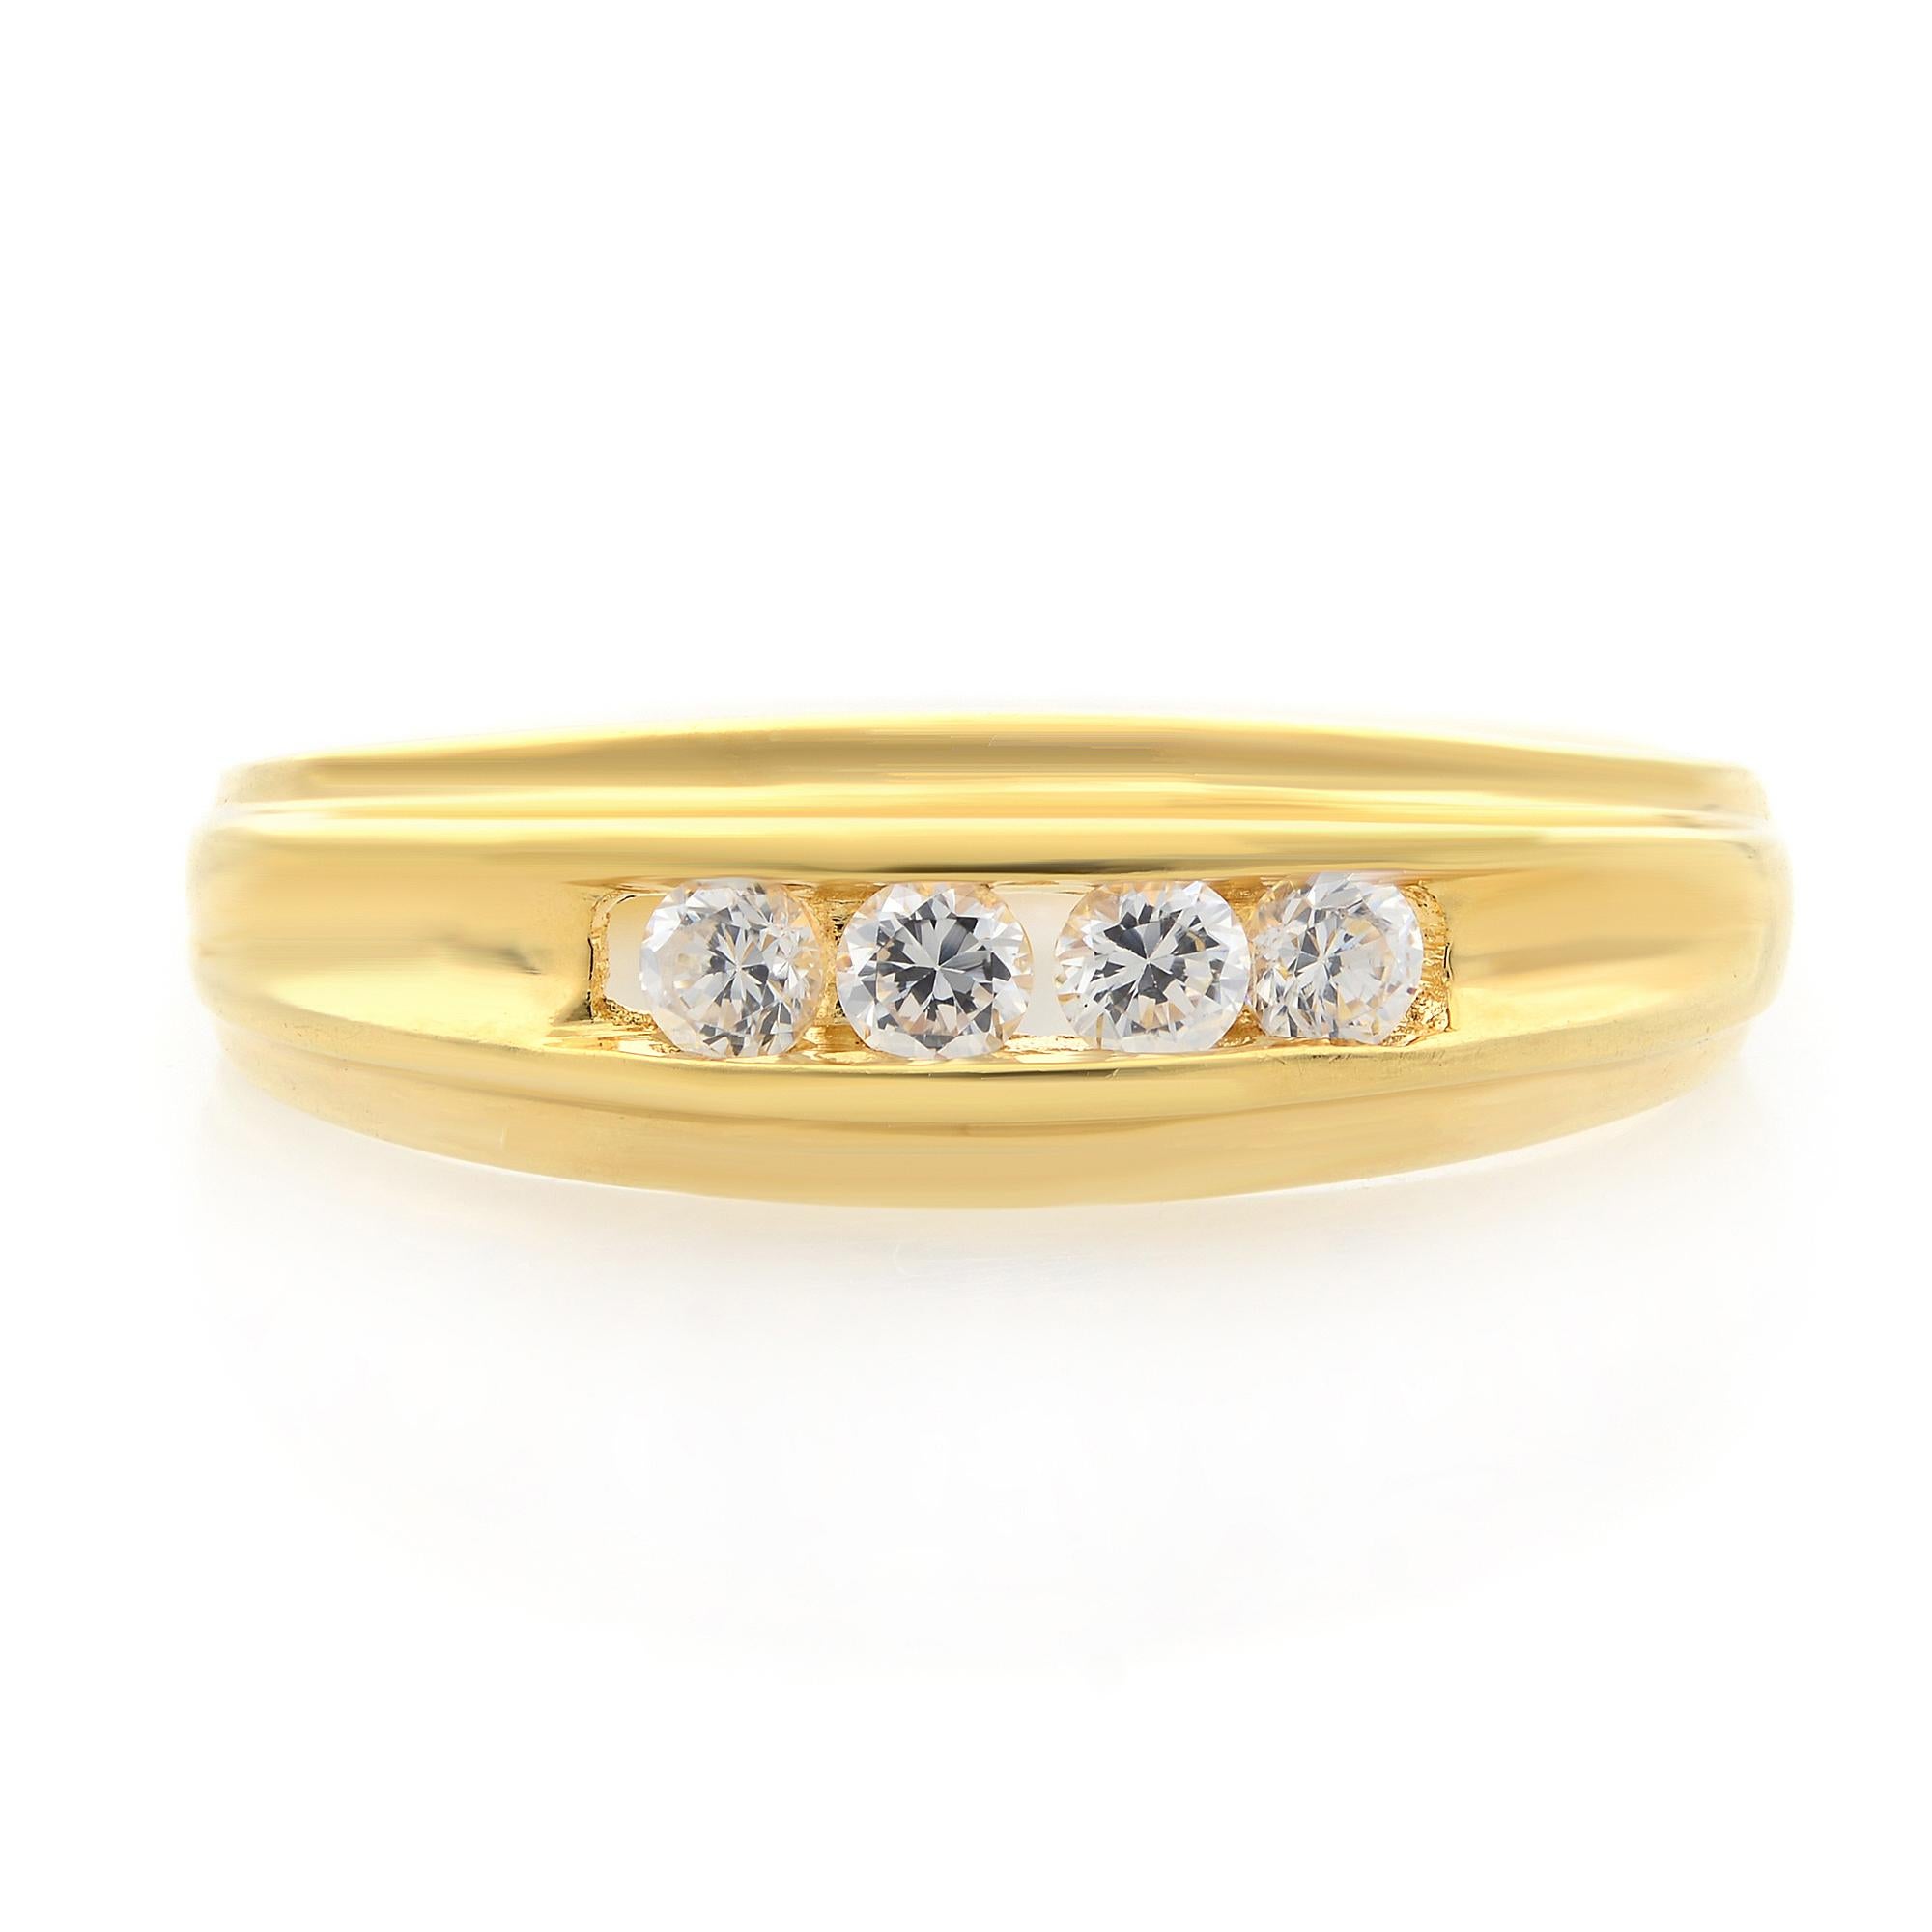 Klassischer und eleganter Diamantring aus hochglanzpoliertem 18 Karat Gelbgold. Dieser Ring enthält 4 perfekt aufeinander abgestimmte runde Diamanten im Brillantschliff in einer Kanalfassung von insgesamt 0,25 Karat. Qualität des Diamanten: Farbe